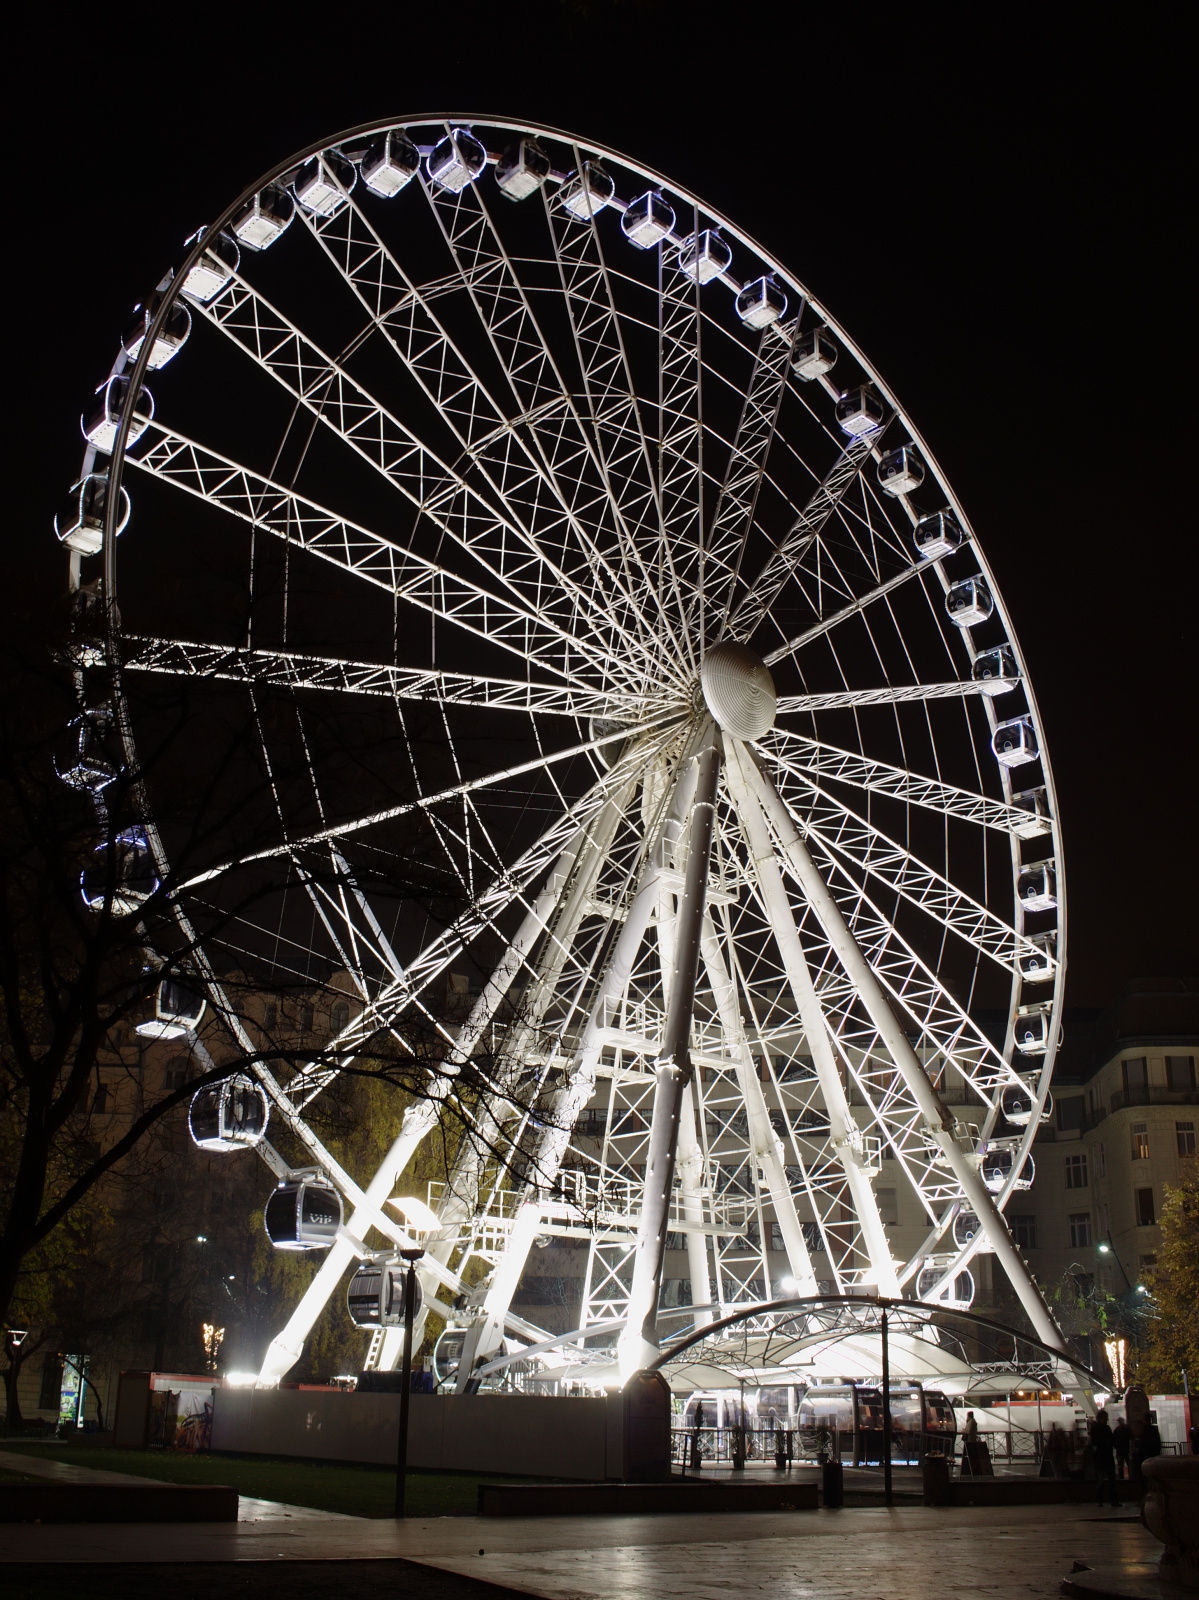 Budapest Eye Ferris Wheel (Travels » Budapest » Budapest at Night)